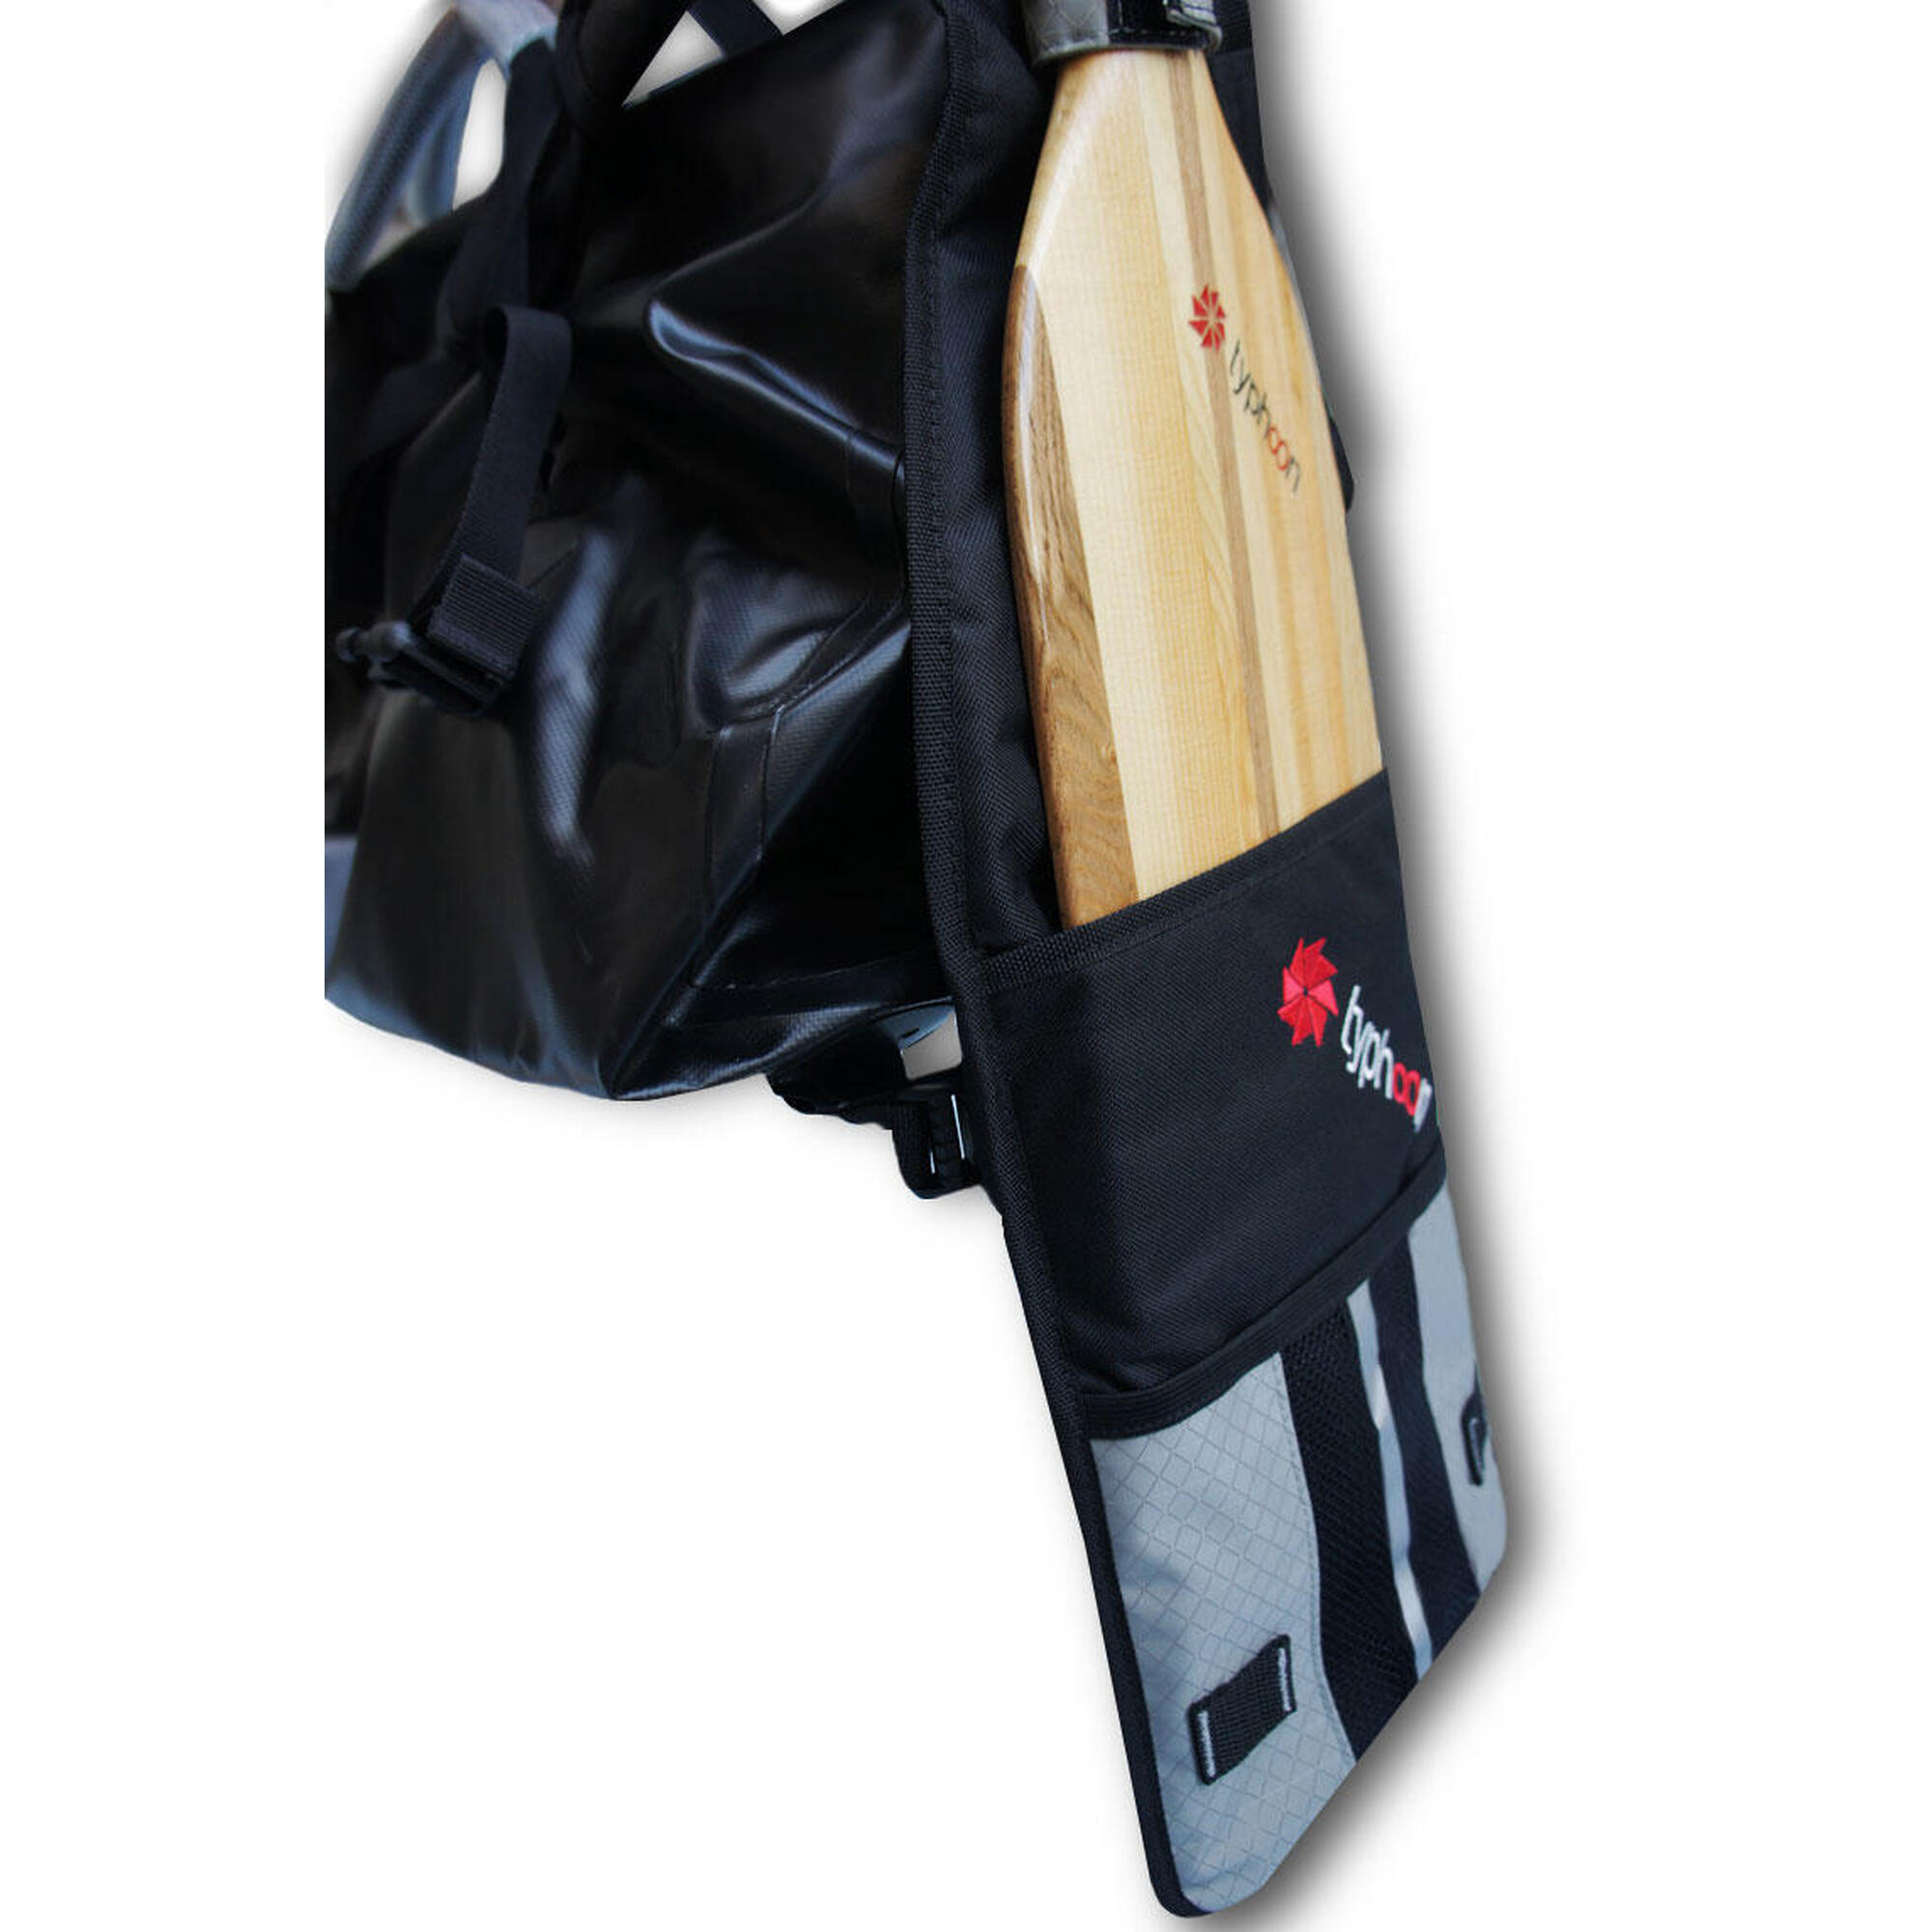 防水獨木舟槳/行李袋 30 L - 黑色